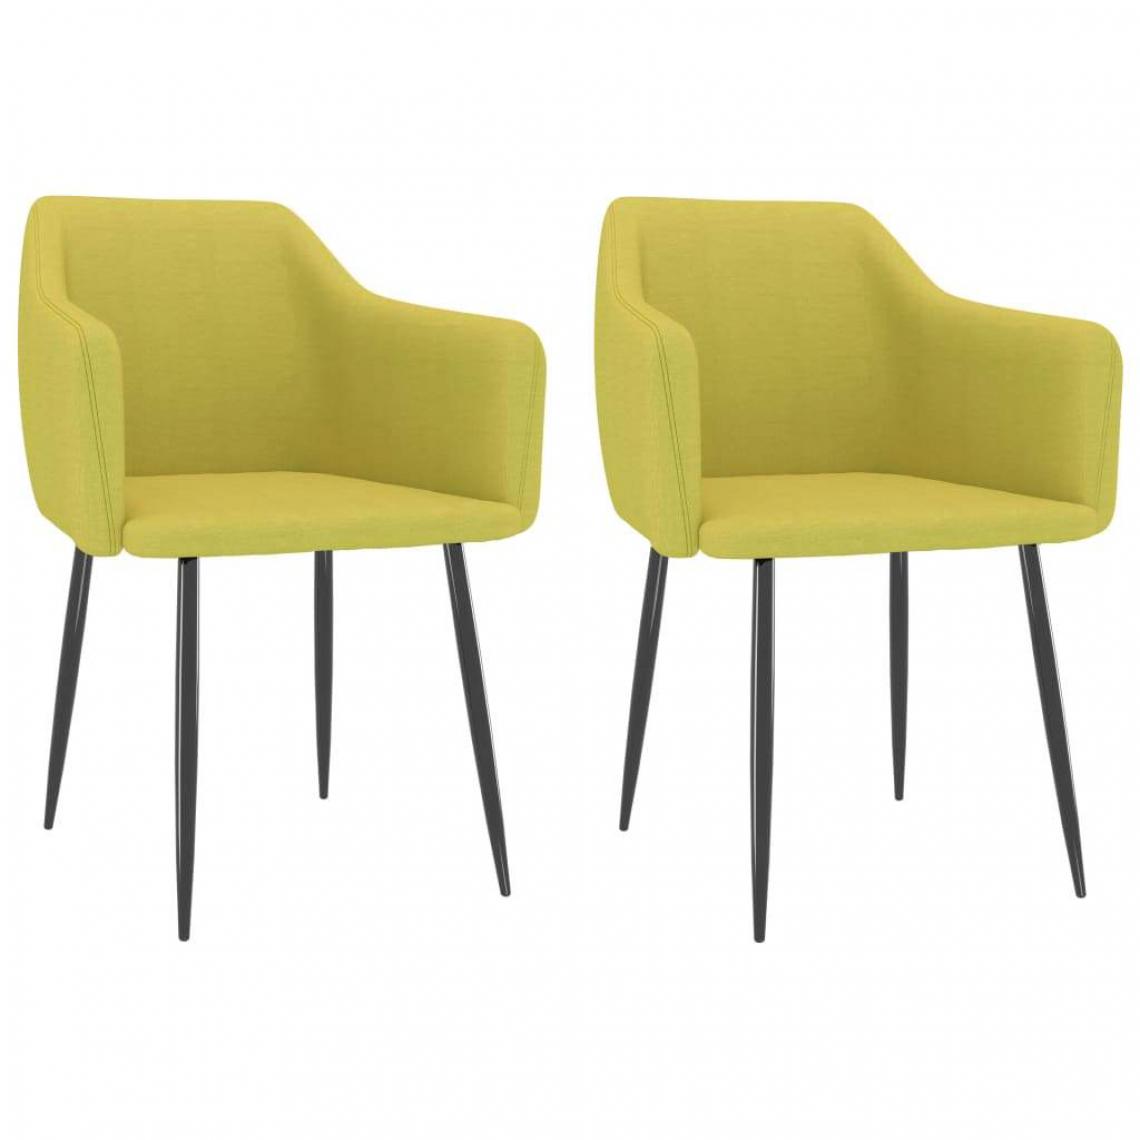 Decoshop26 - Lot de 2 chaises de salle à manger cuisine design moderne tissu vert CDS021129 - Chaises